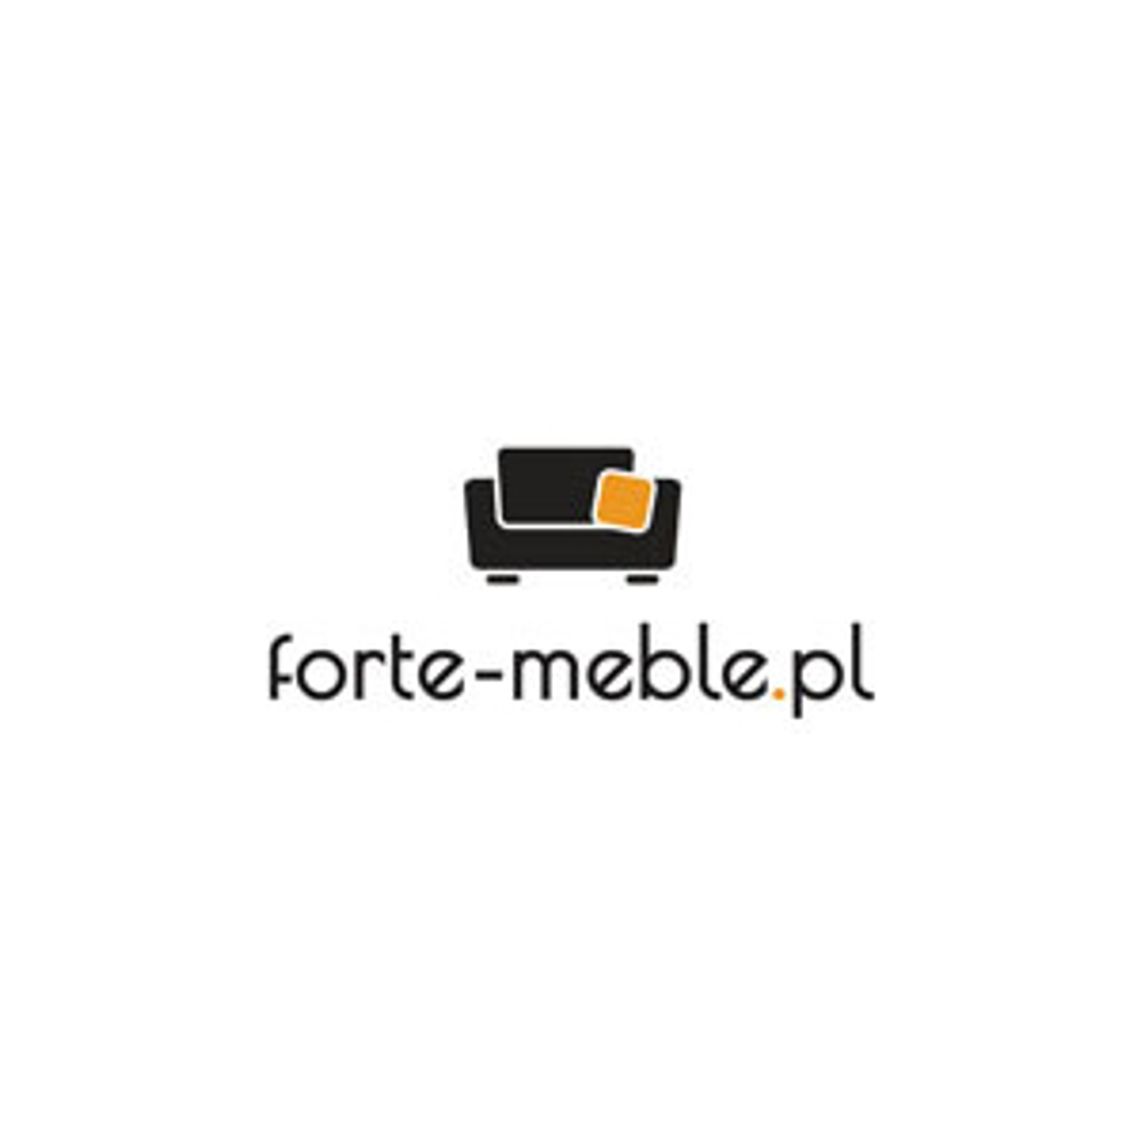 Sklep z meblami online - Forte-Meble